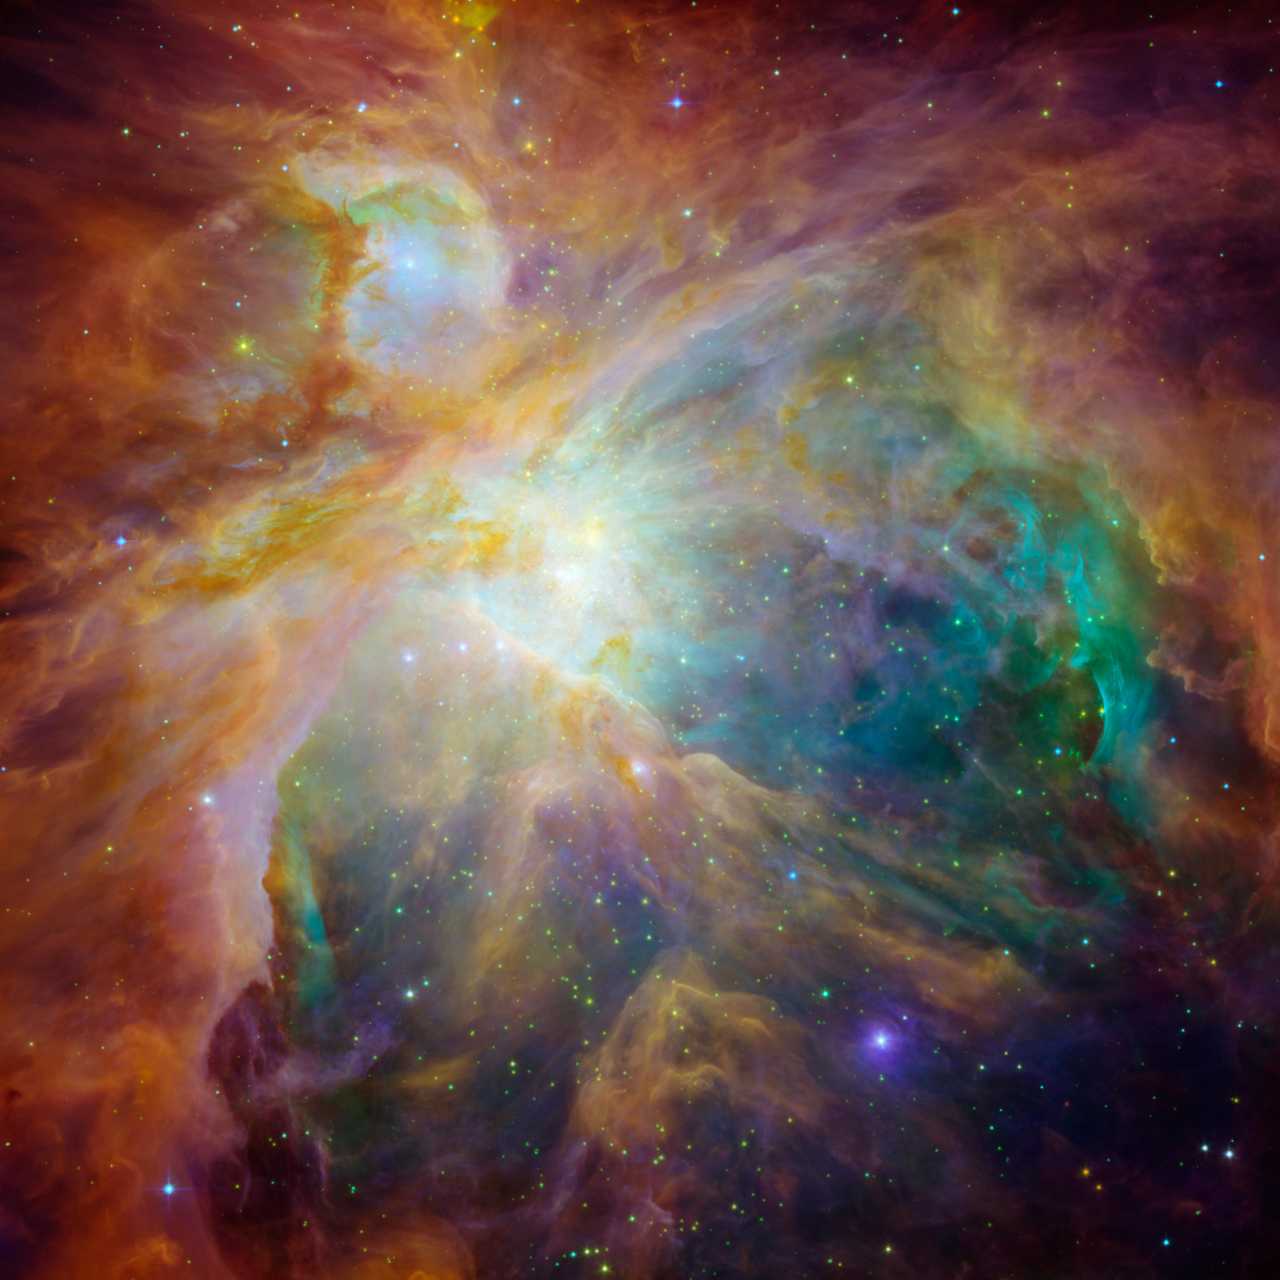 2020 yılının en güzel uzay fotoğrafı! Orion Nebulası'nın fotoğrafı